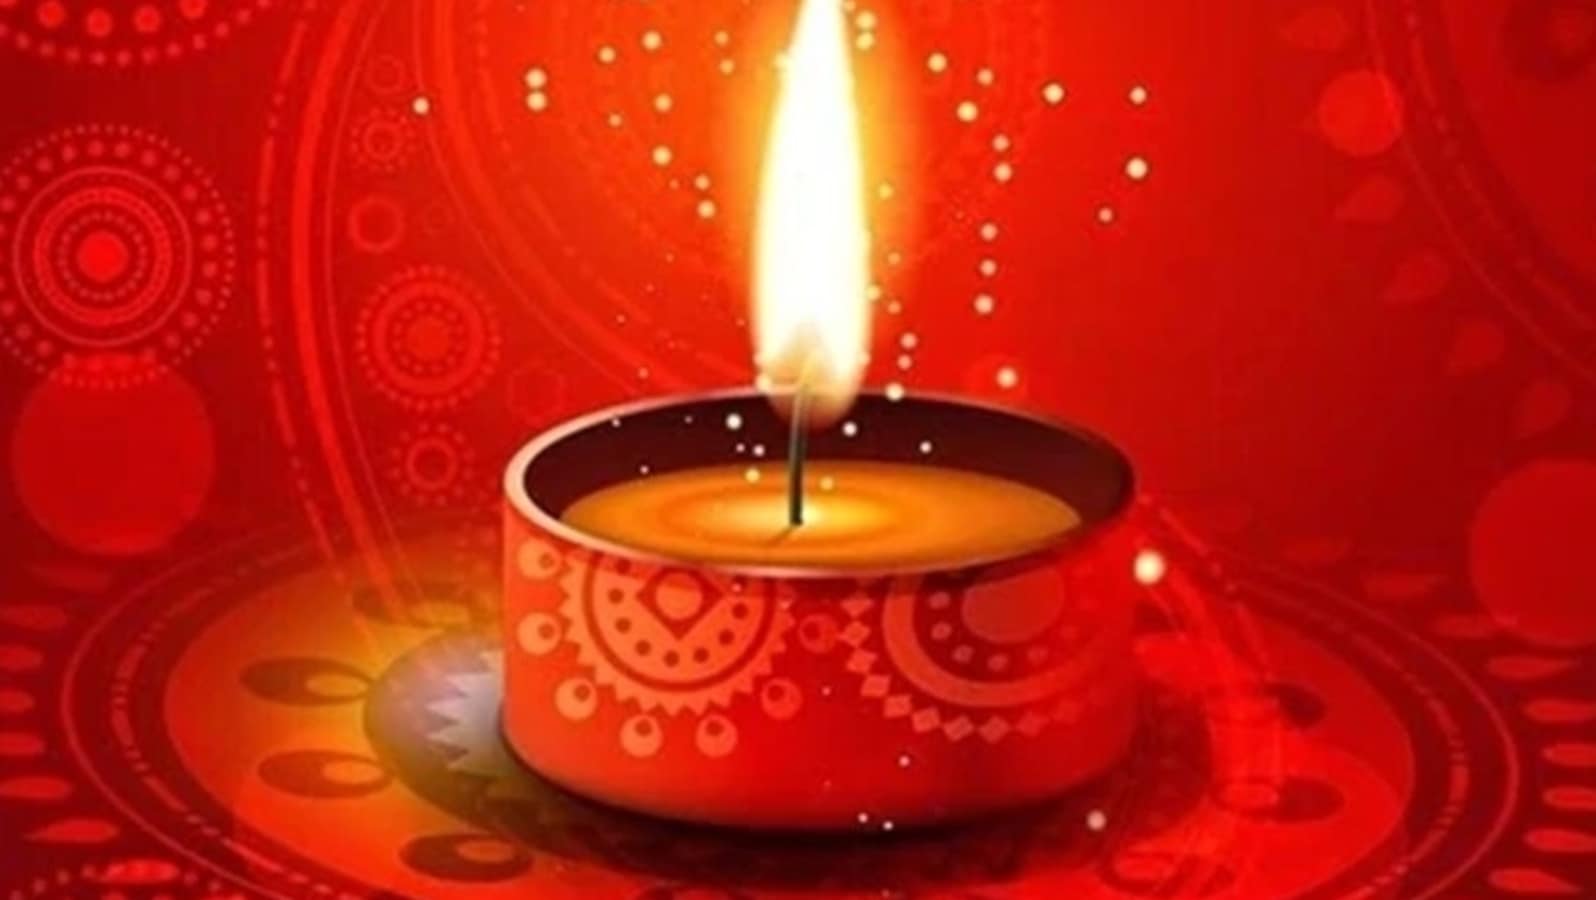 Chhoti Diwali: When is Narak Chaturdashi? Date, story of Narakasur ...